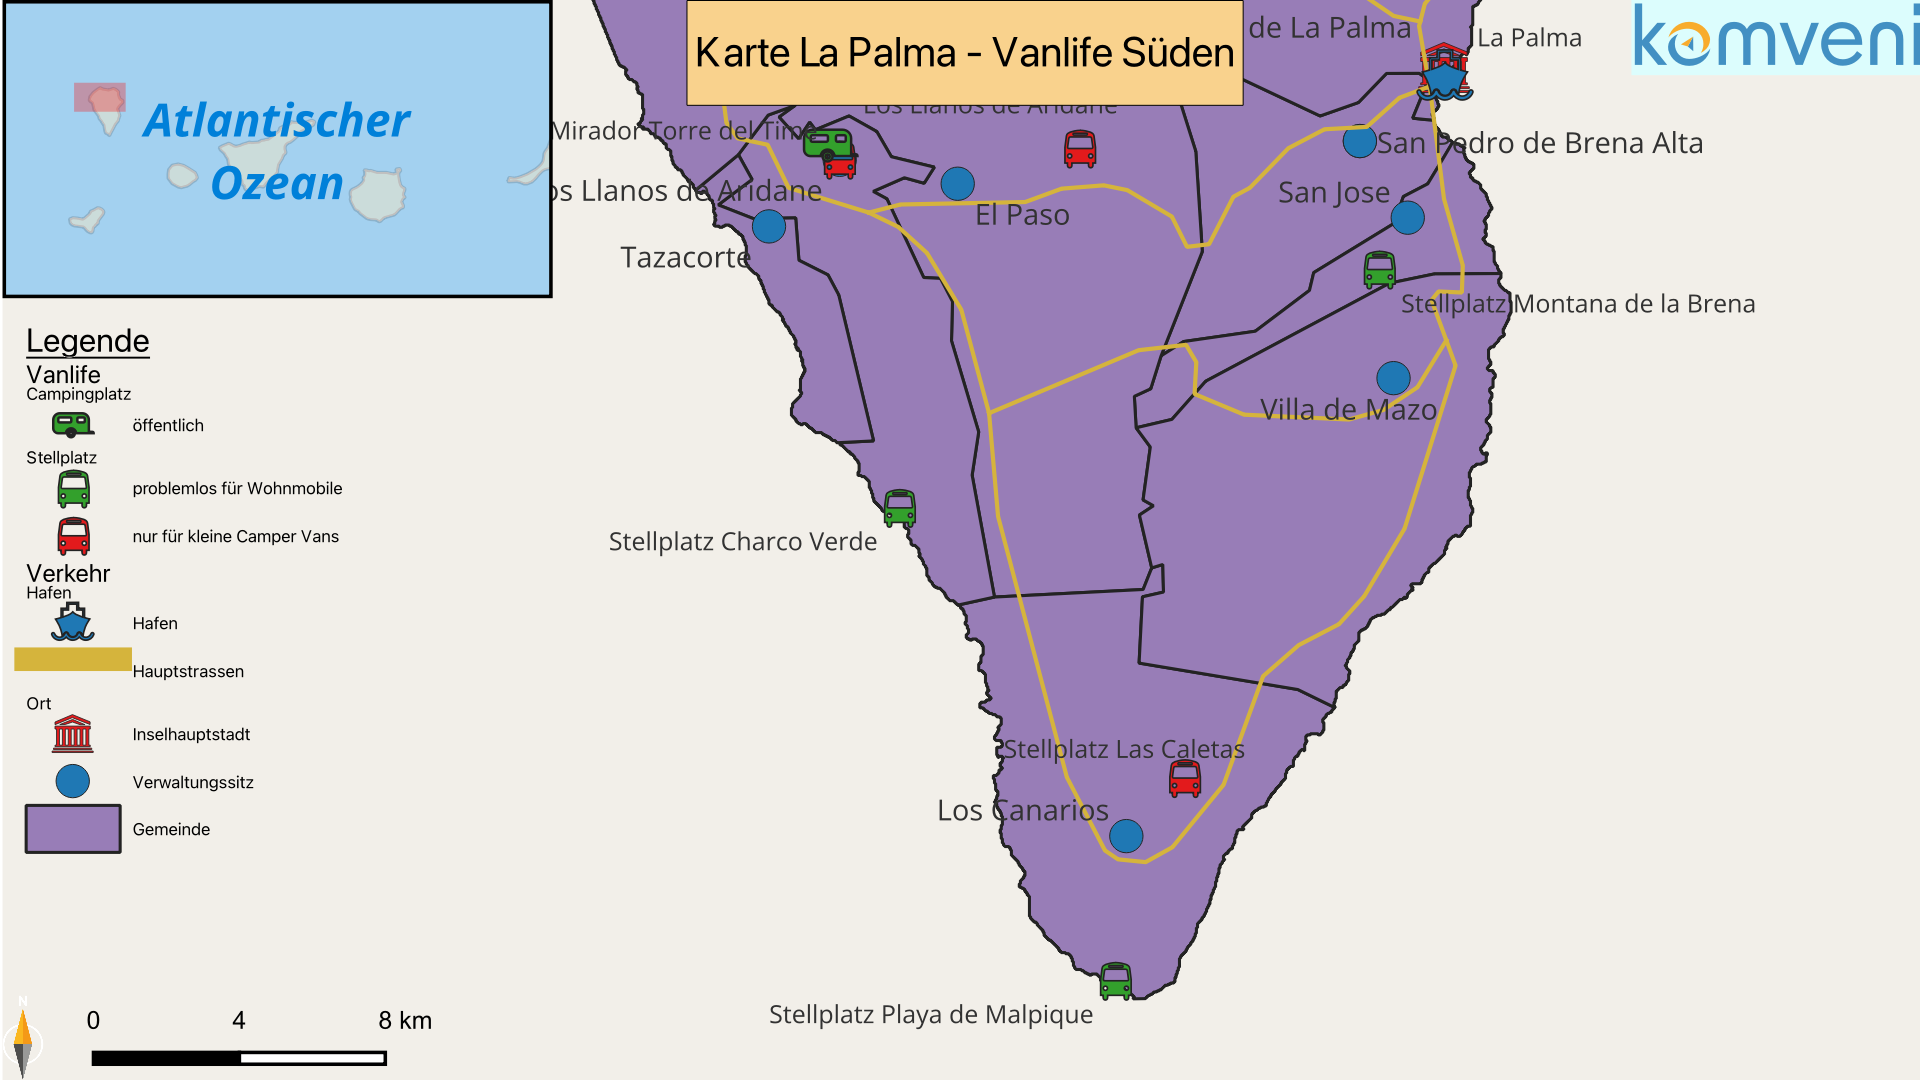 Karte La Palma Vanlife Sueden